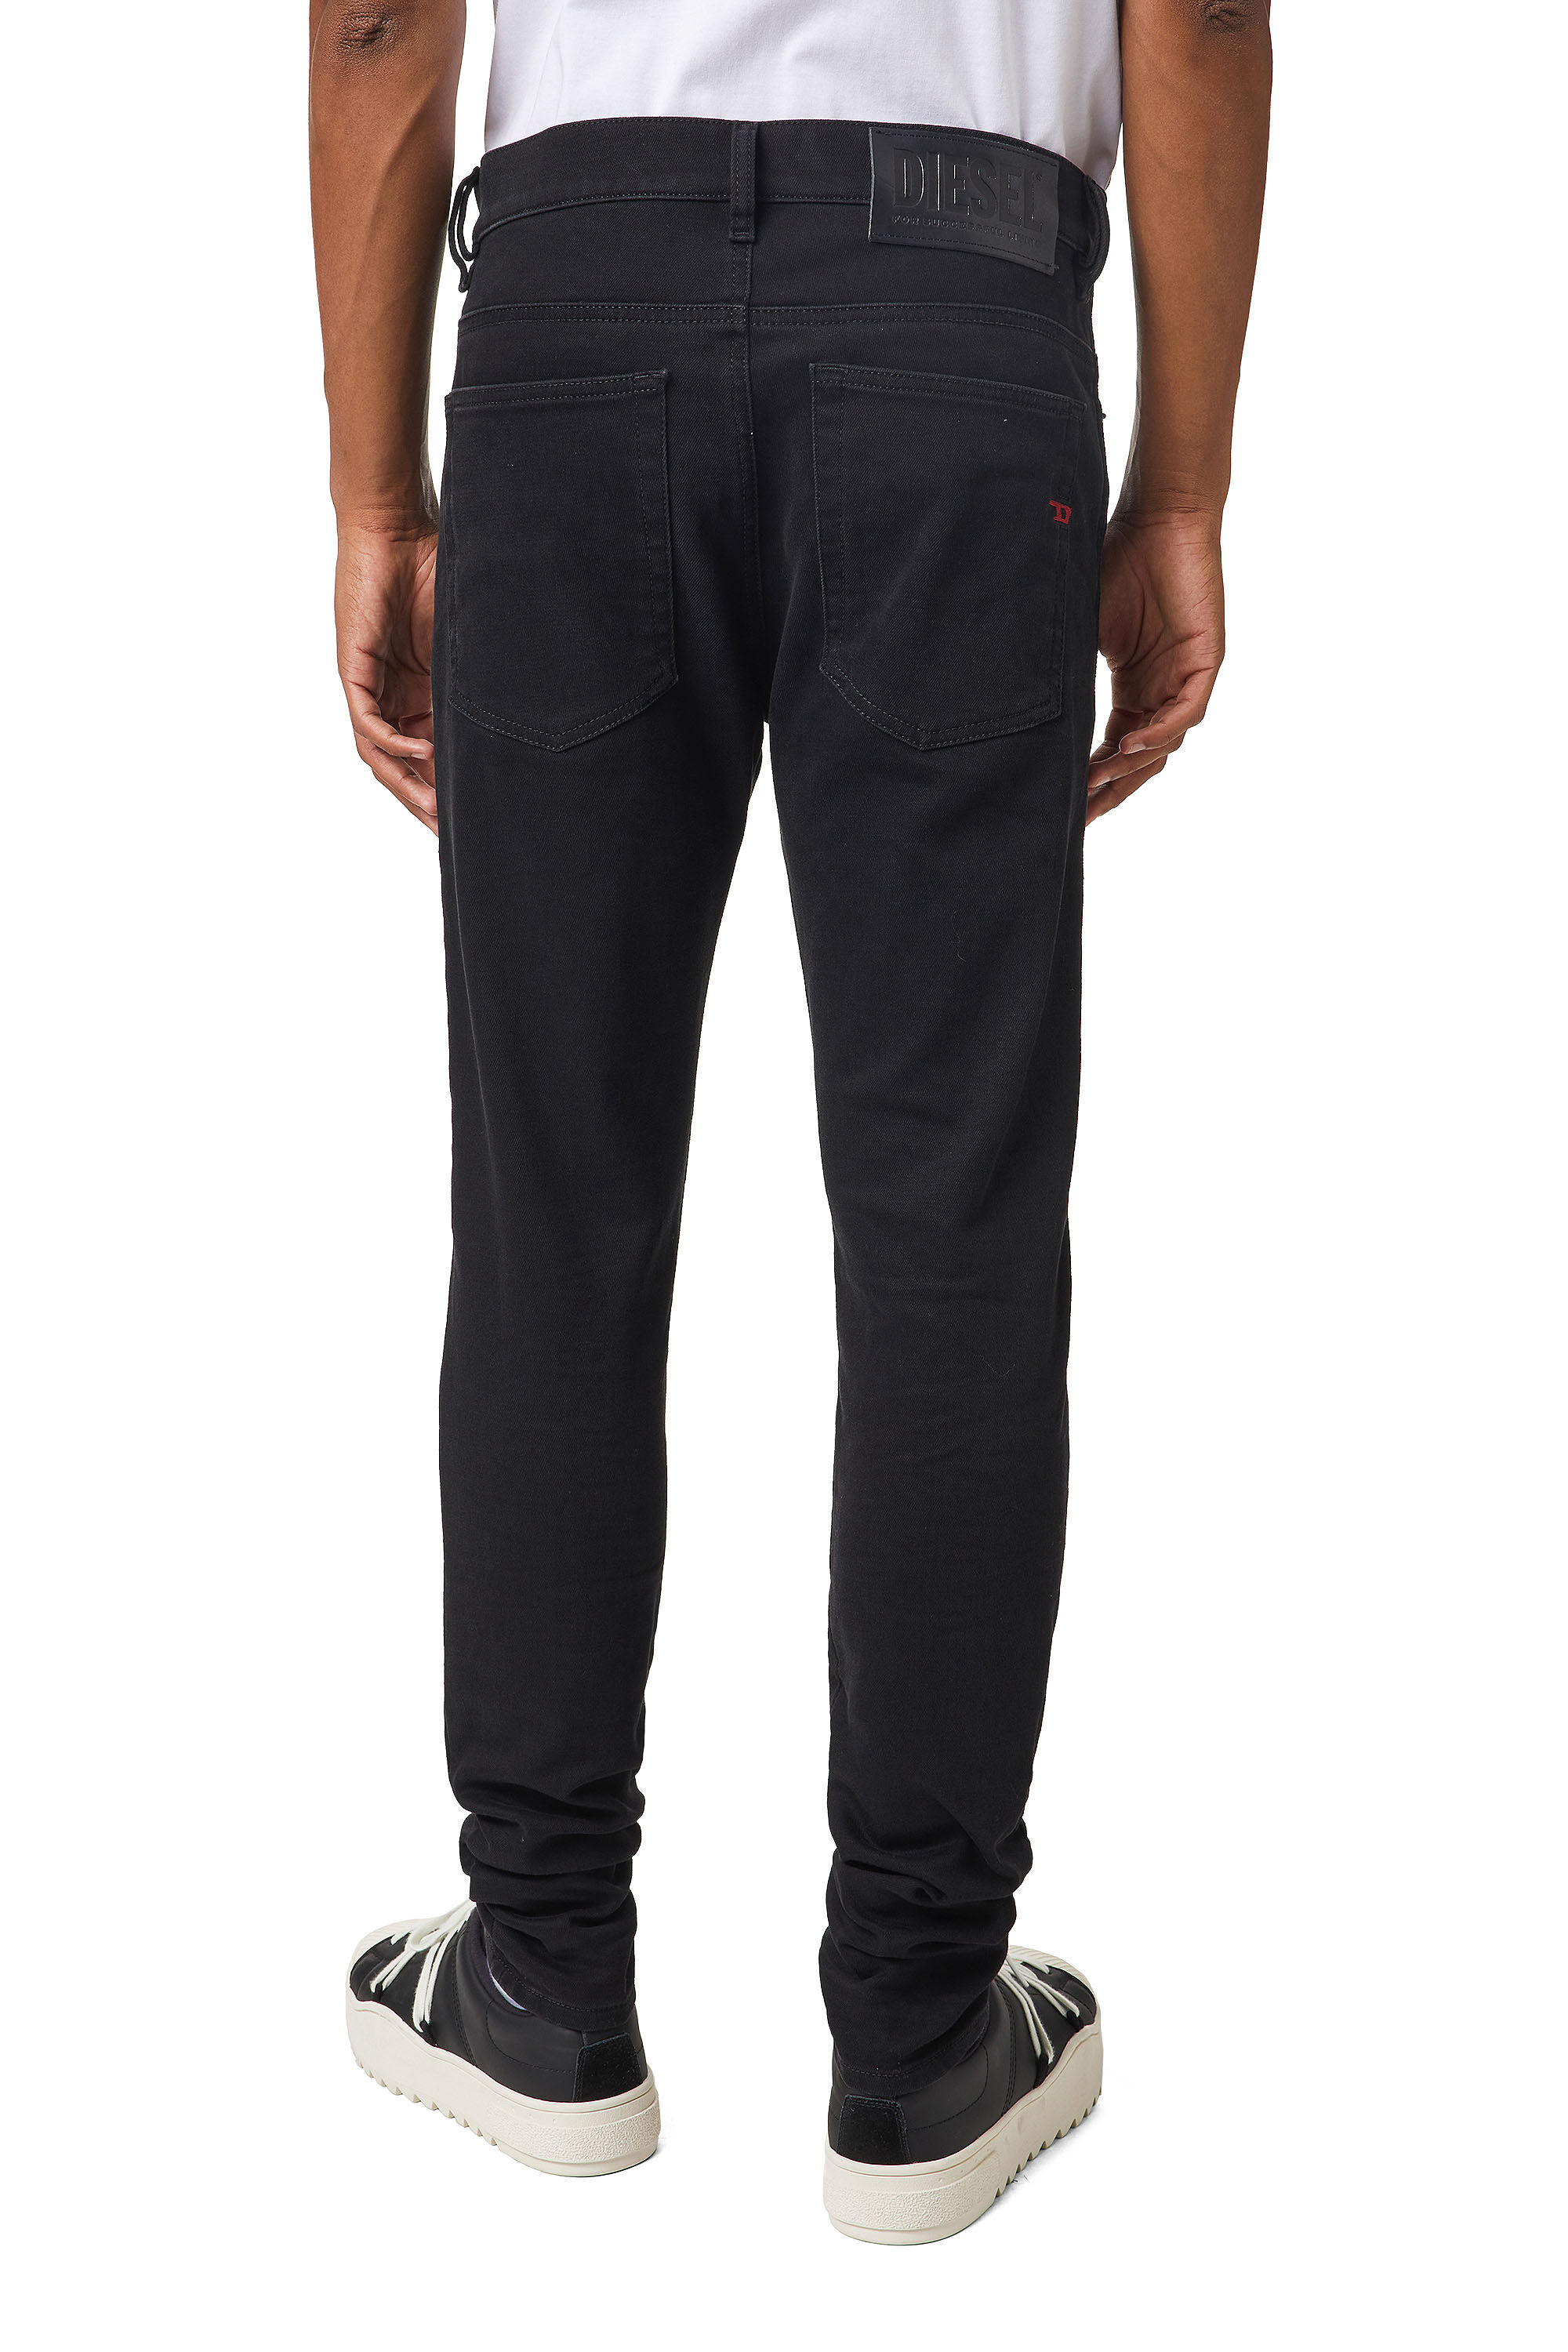 Diesel - D-Amny JoggJeans® Z9A29 Skinny, Black/Dark grey - Image 4